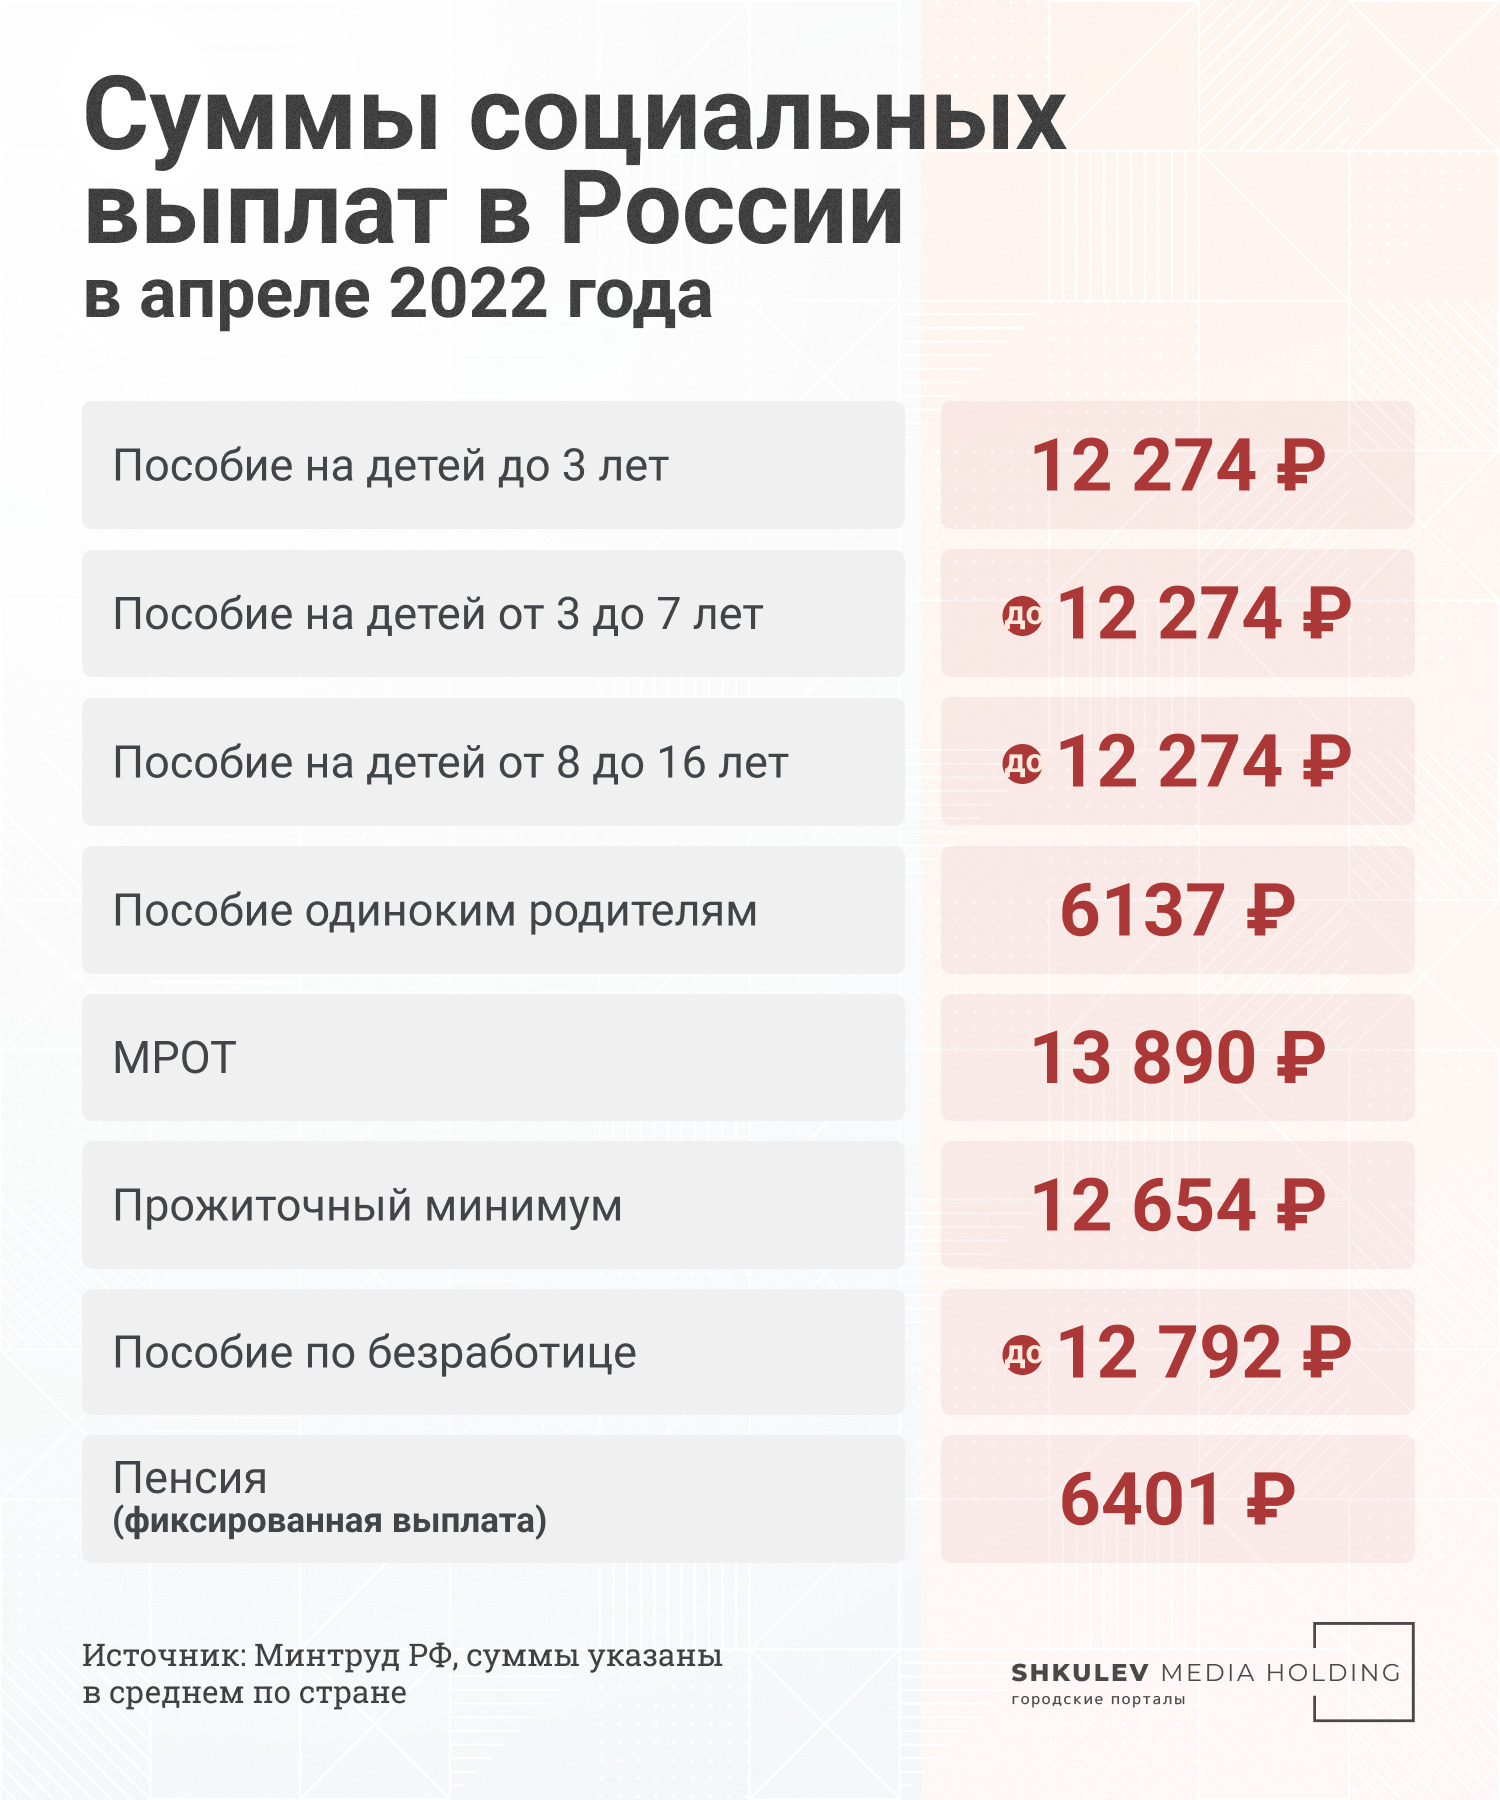 Сейчас суммы выплат в России выглядят так